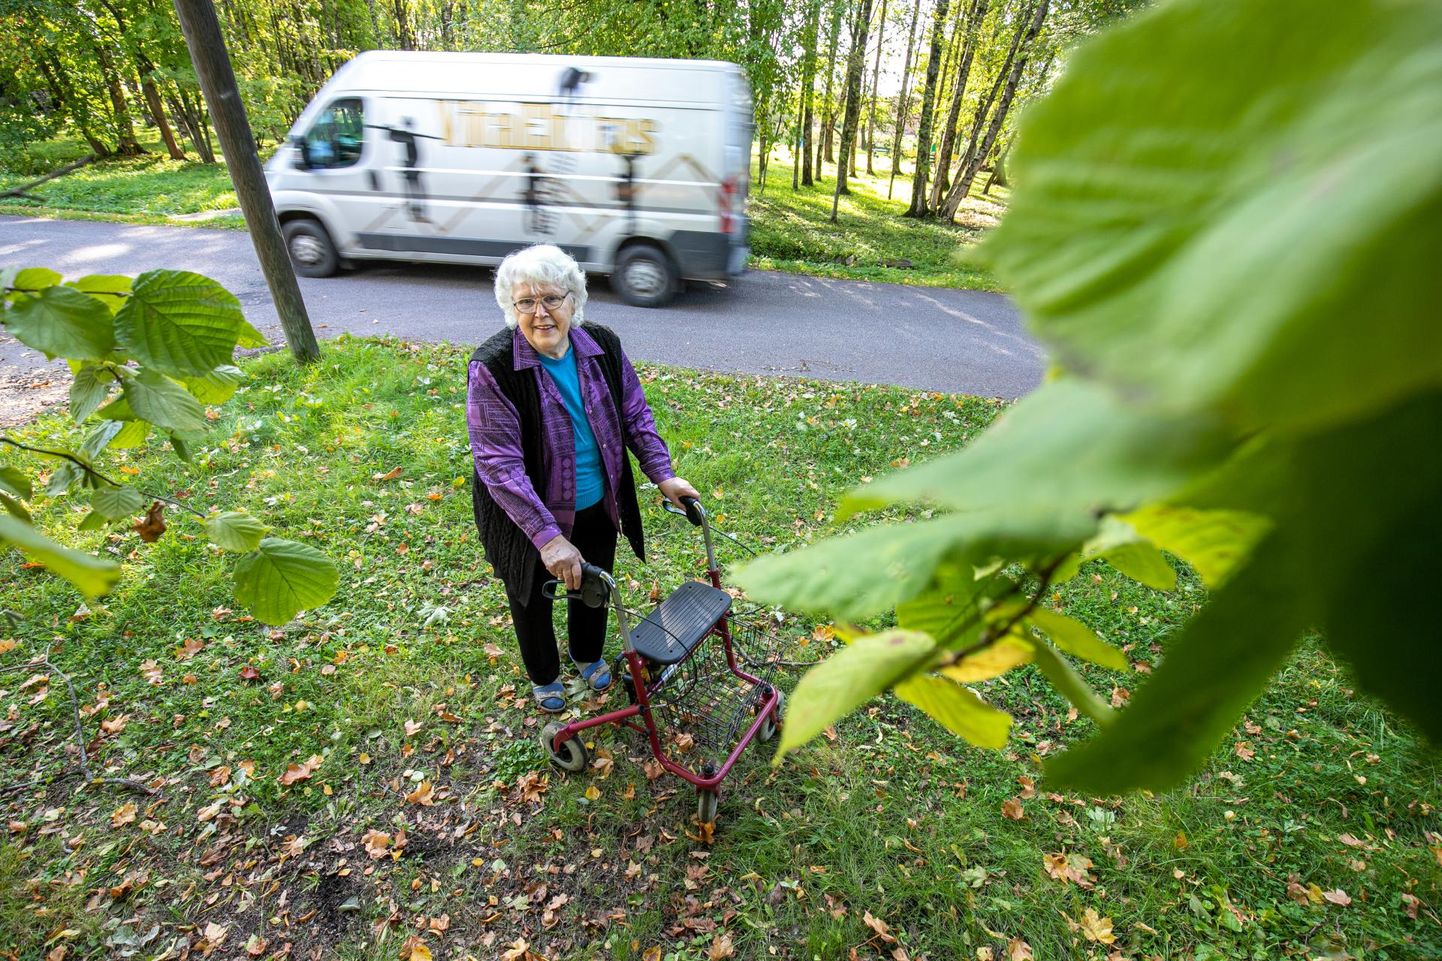 Vana-Pärnu elanikul, raske puudega Naali-Marie Liivrannal tuleb peale oma koduaias heakorra tagamise hooldada krunti piiravat umbes 200ruutmeetrist ala.